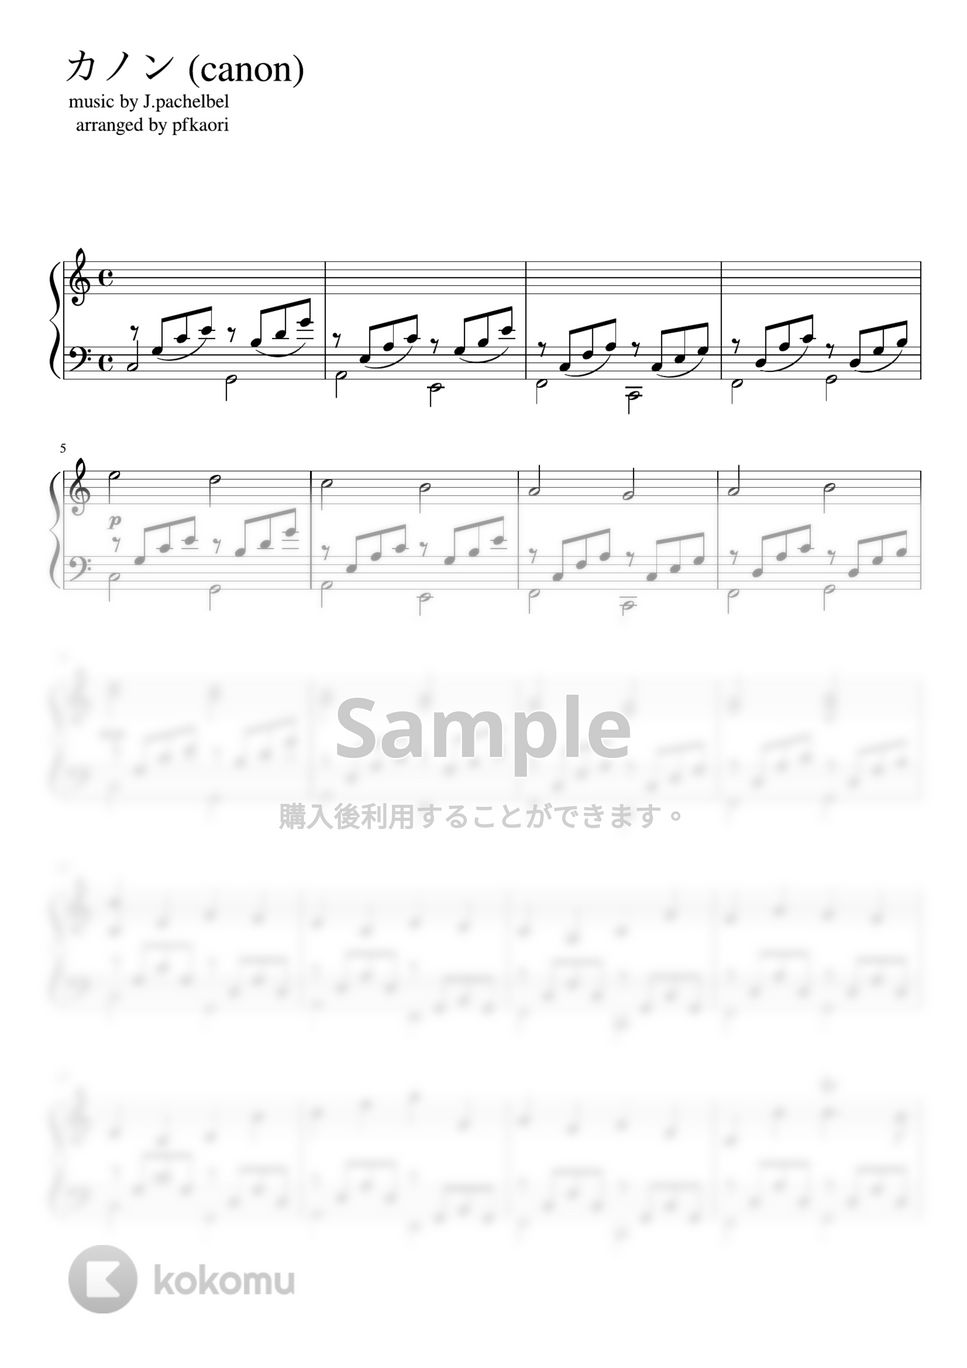 パッフェルベル - カノン(Cdur) (ピアノソロ中級) by pfkaori